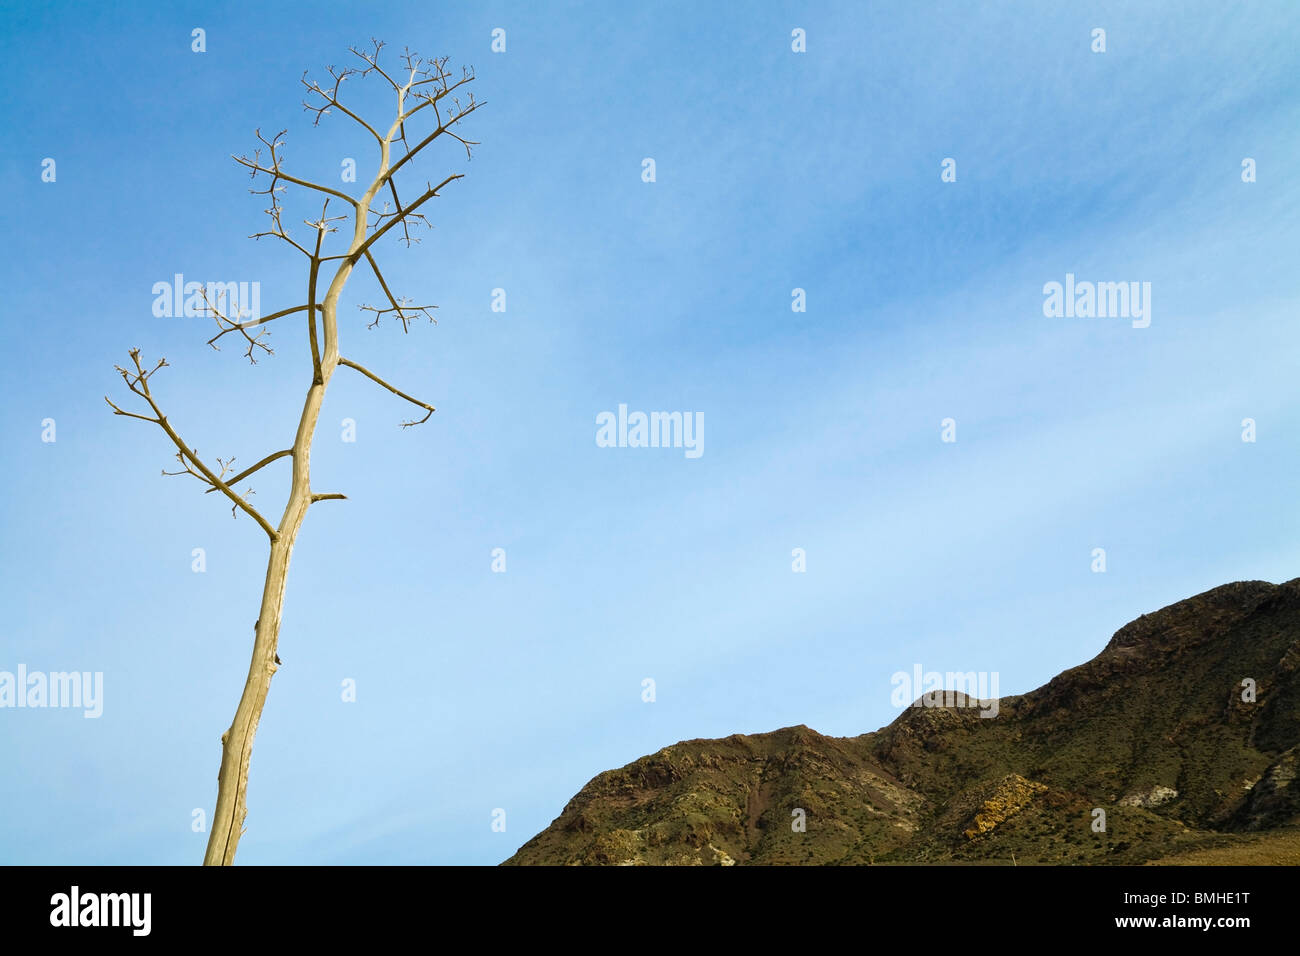 Almadraba De Monteleva, la Province d'Almeria, Espagne ; plante desséchée montre contre un ciel bleu Banque D'Images